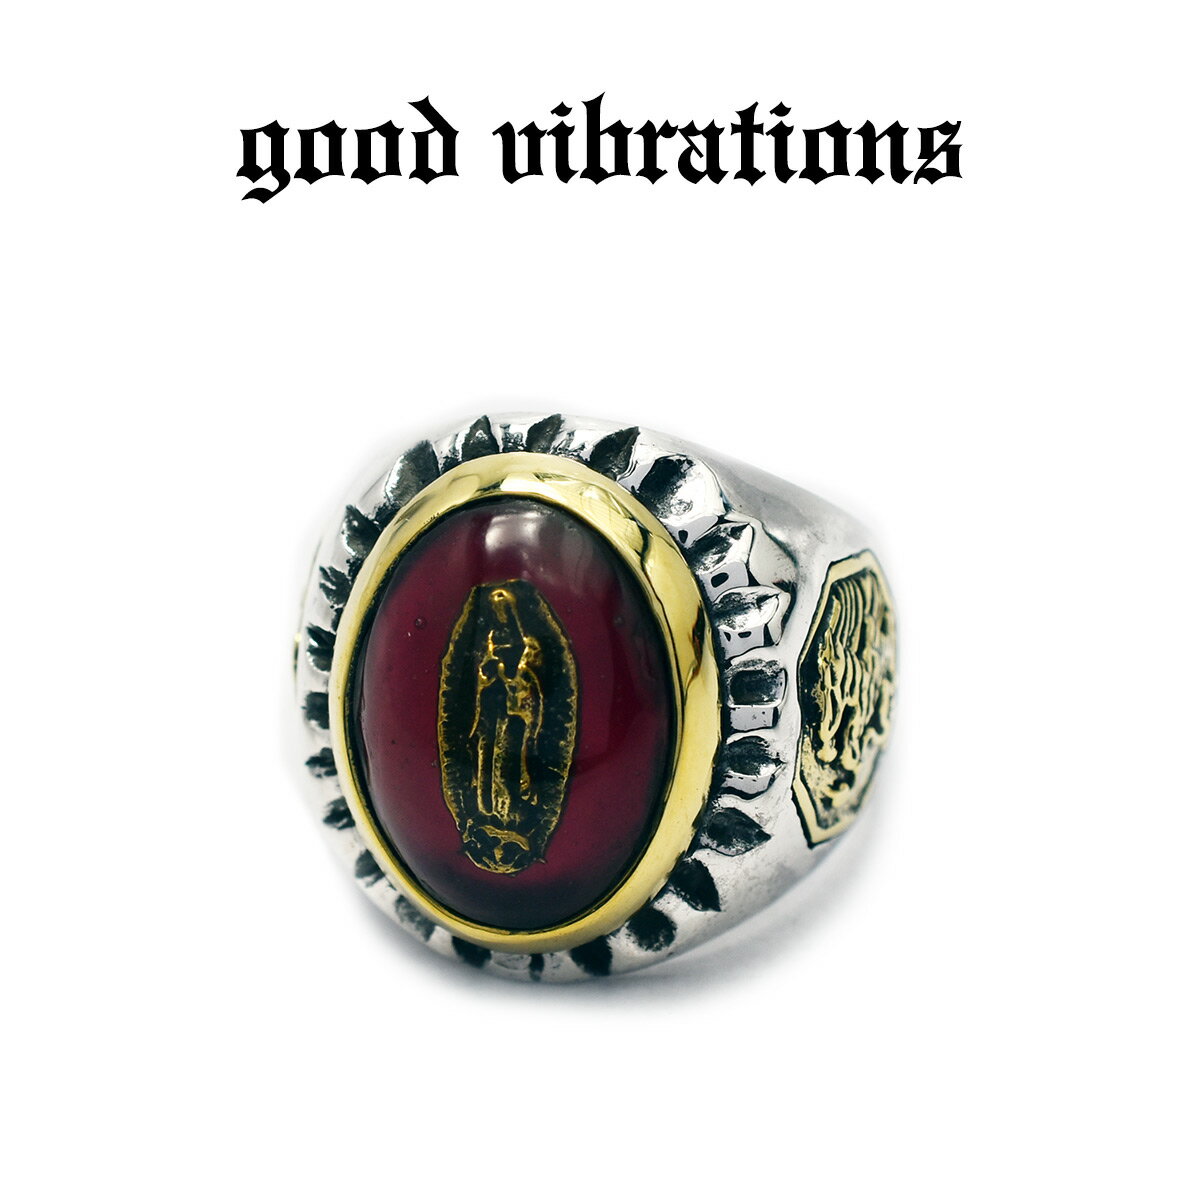 シルバーアクセサリー 指輪 グッドバイブレーションズ メキシカンリング グアダルーペの聖母 マリア イーグルエンブレム 鷲の紋章 デザインリング #19 #21 19号 21号 シルバー925 純銀 真鍮